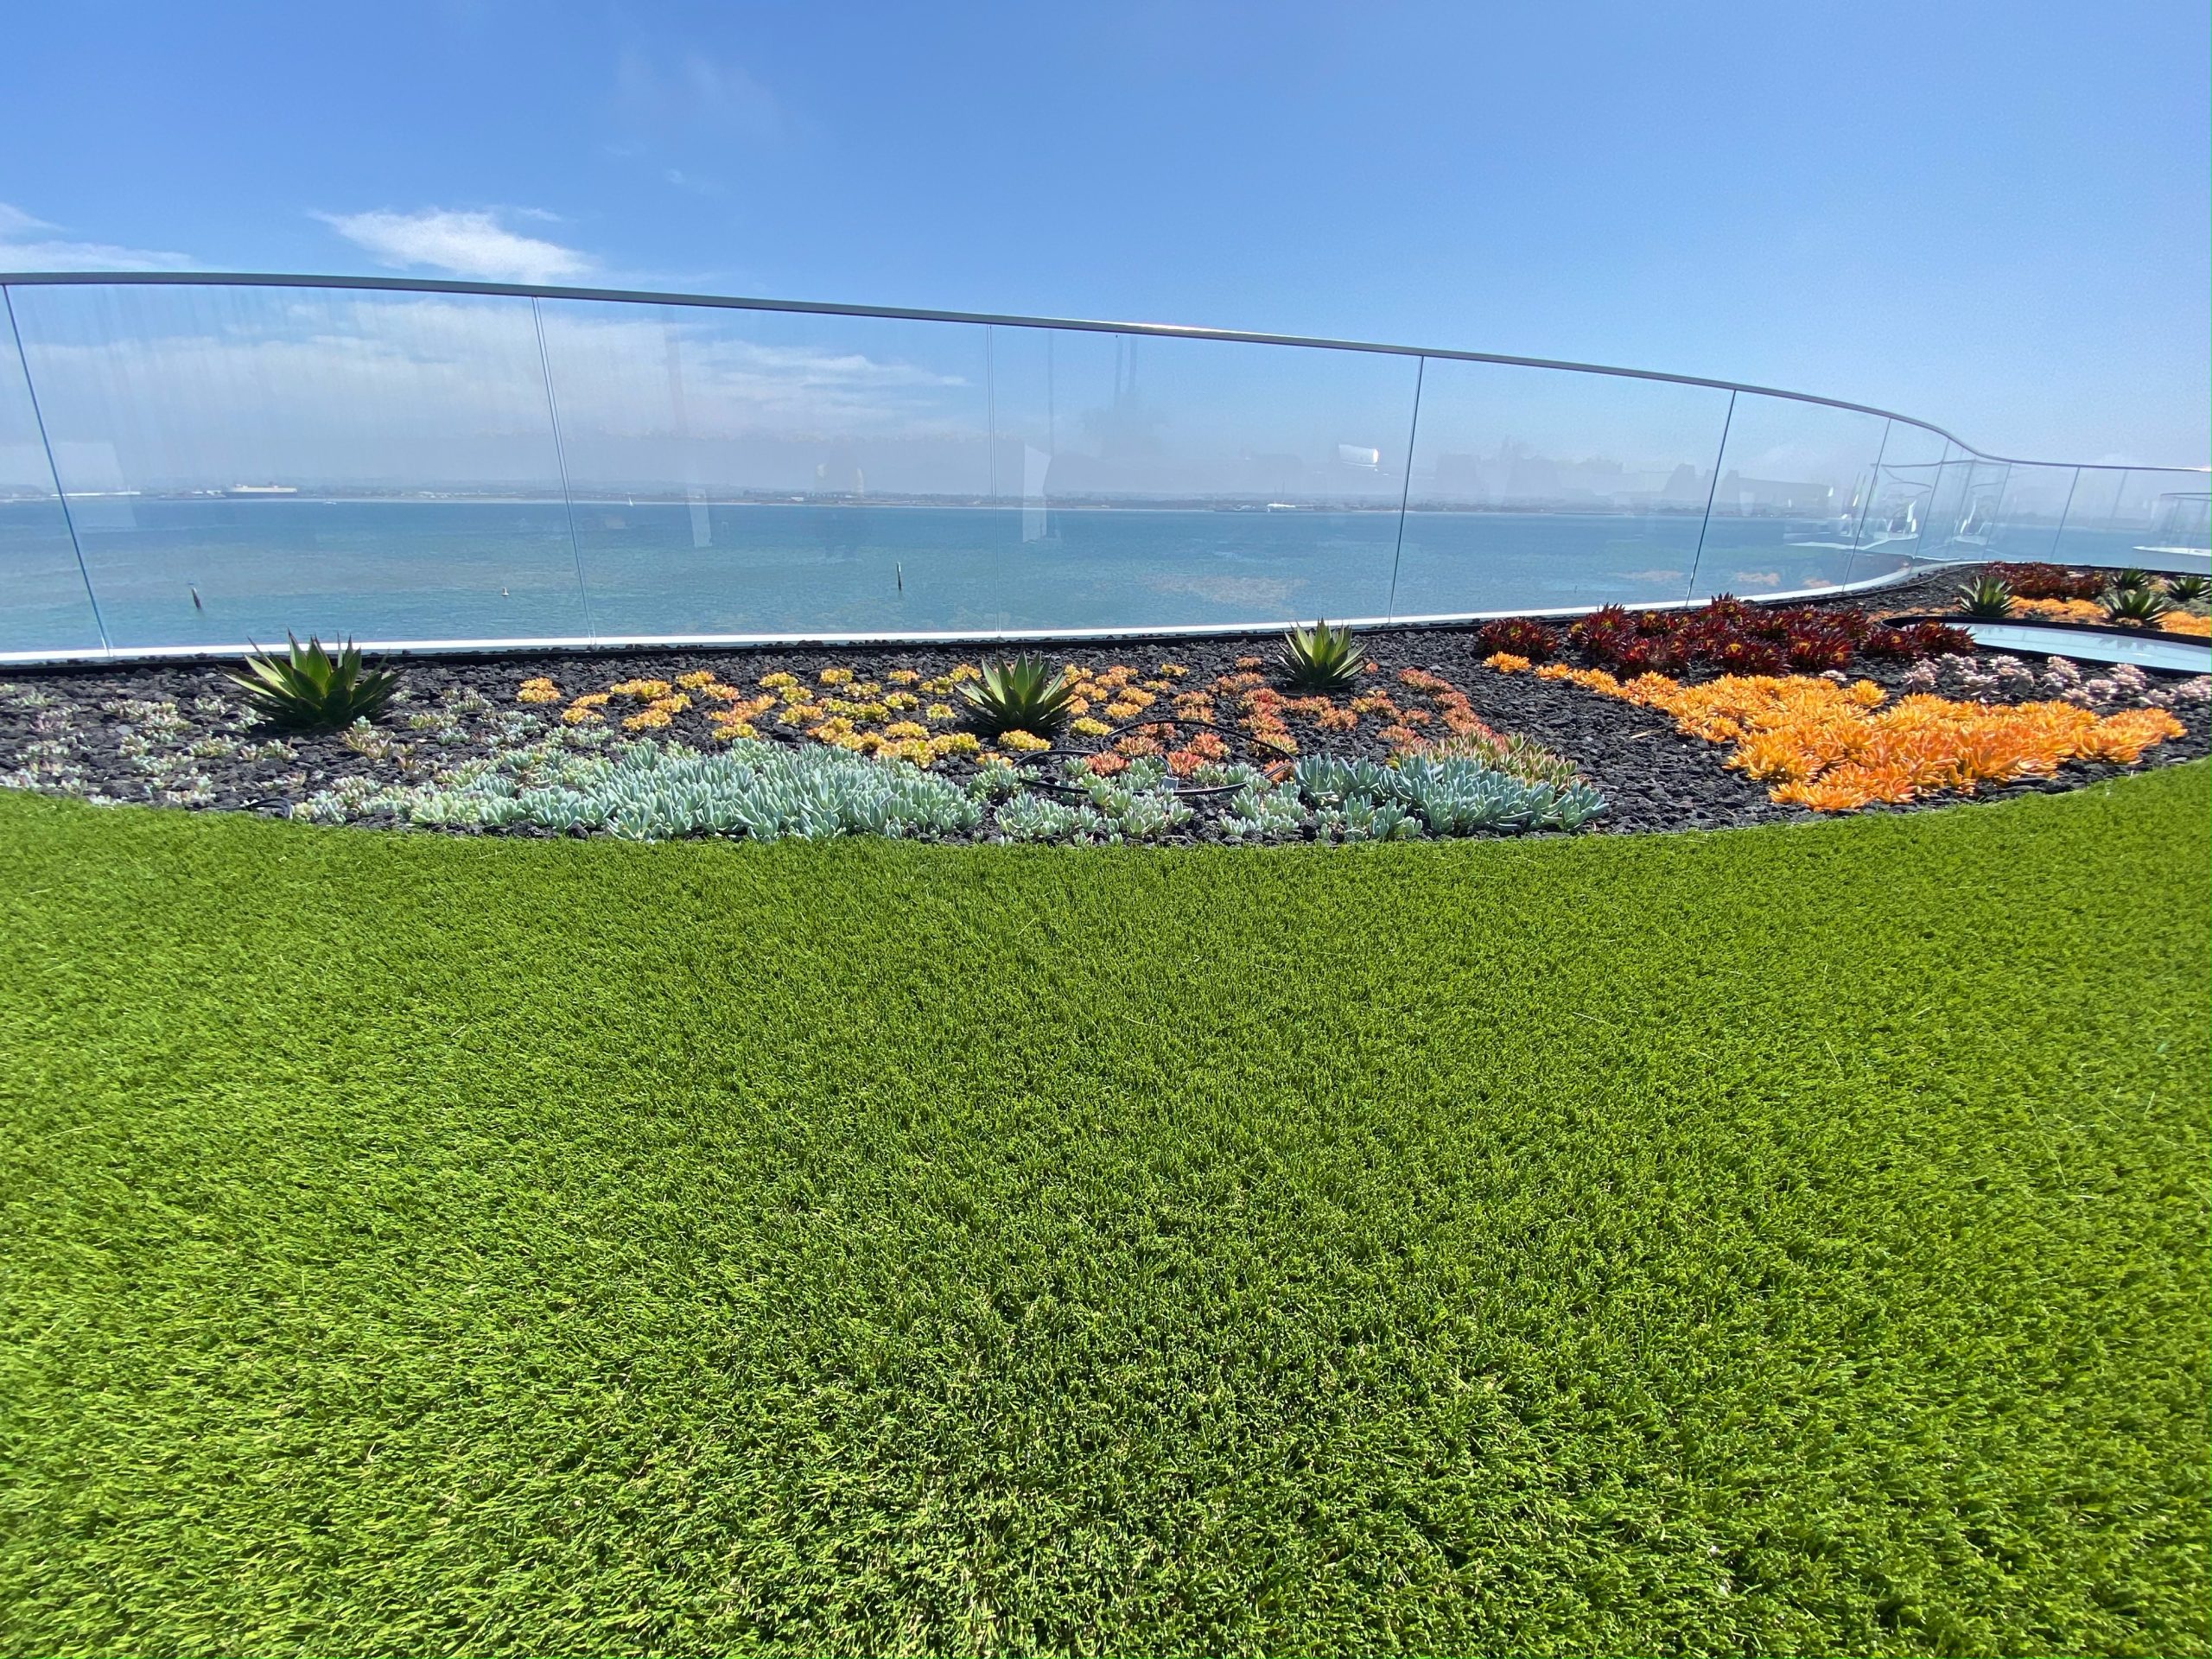 artificial grass installation near the ocean